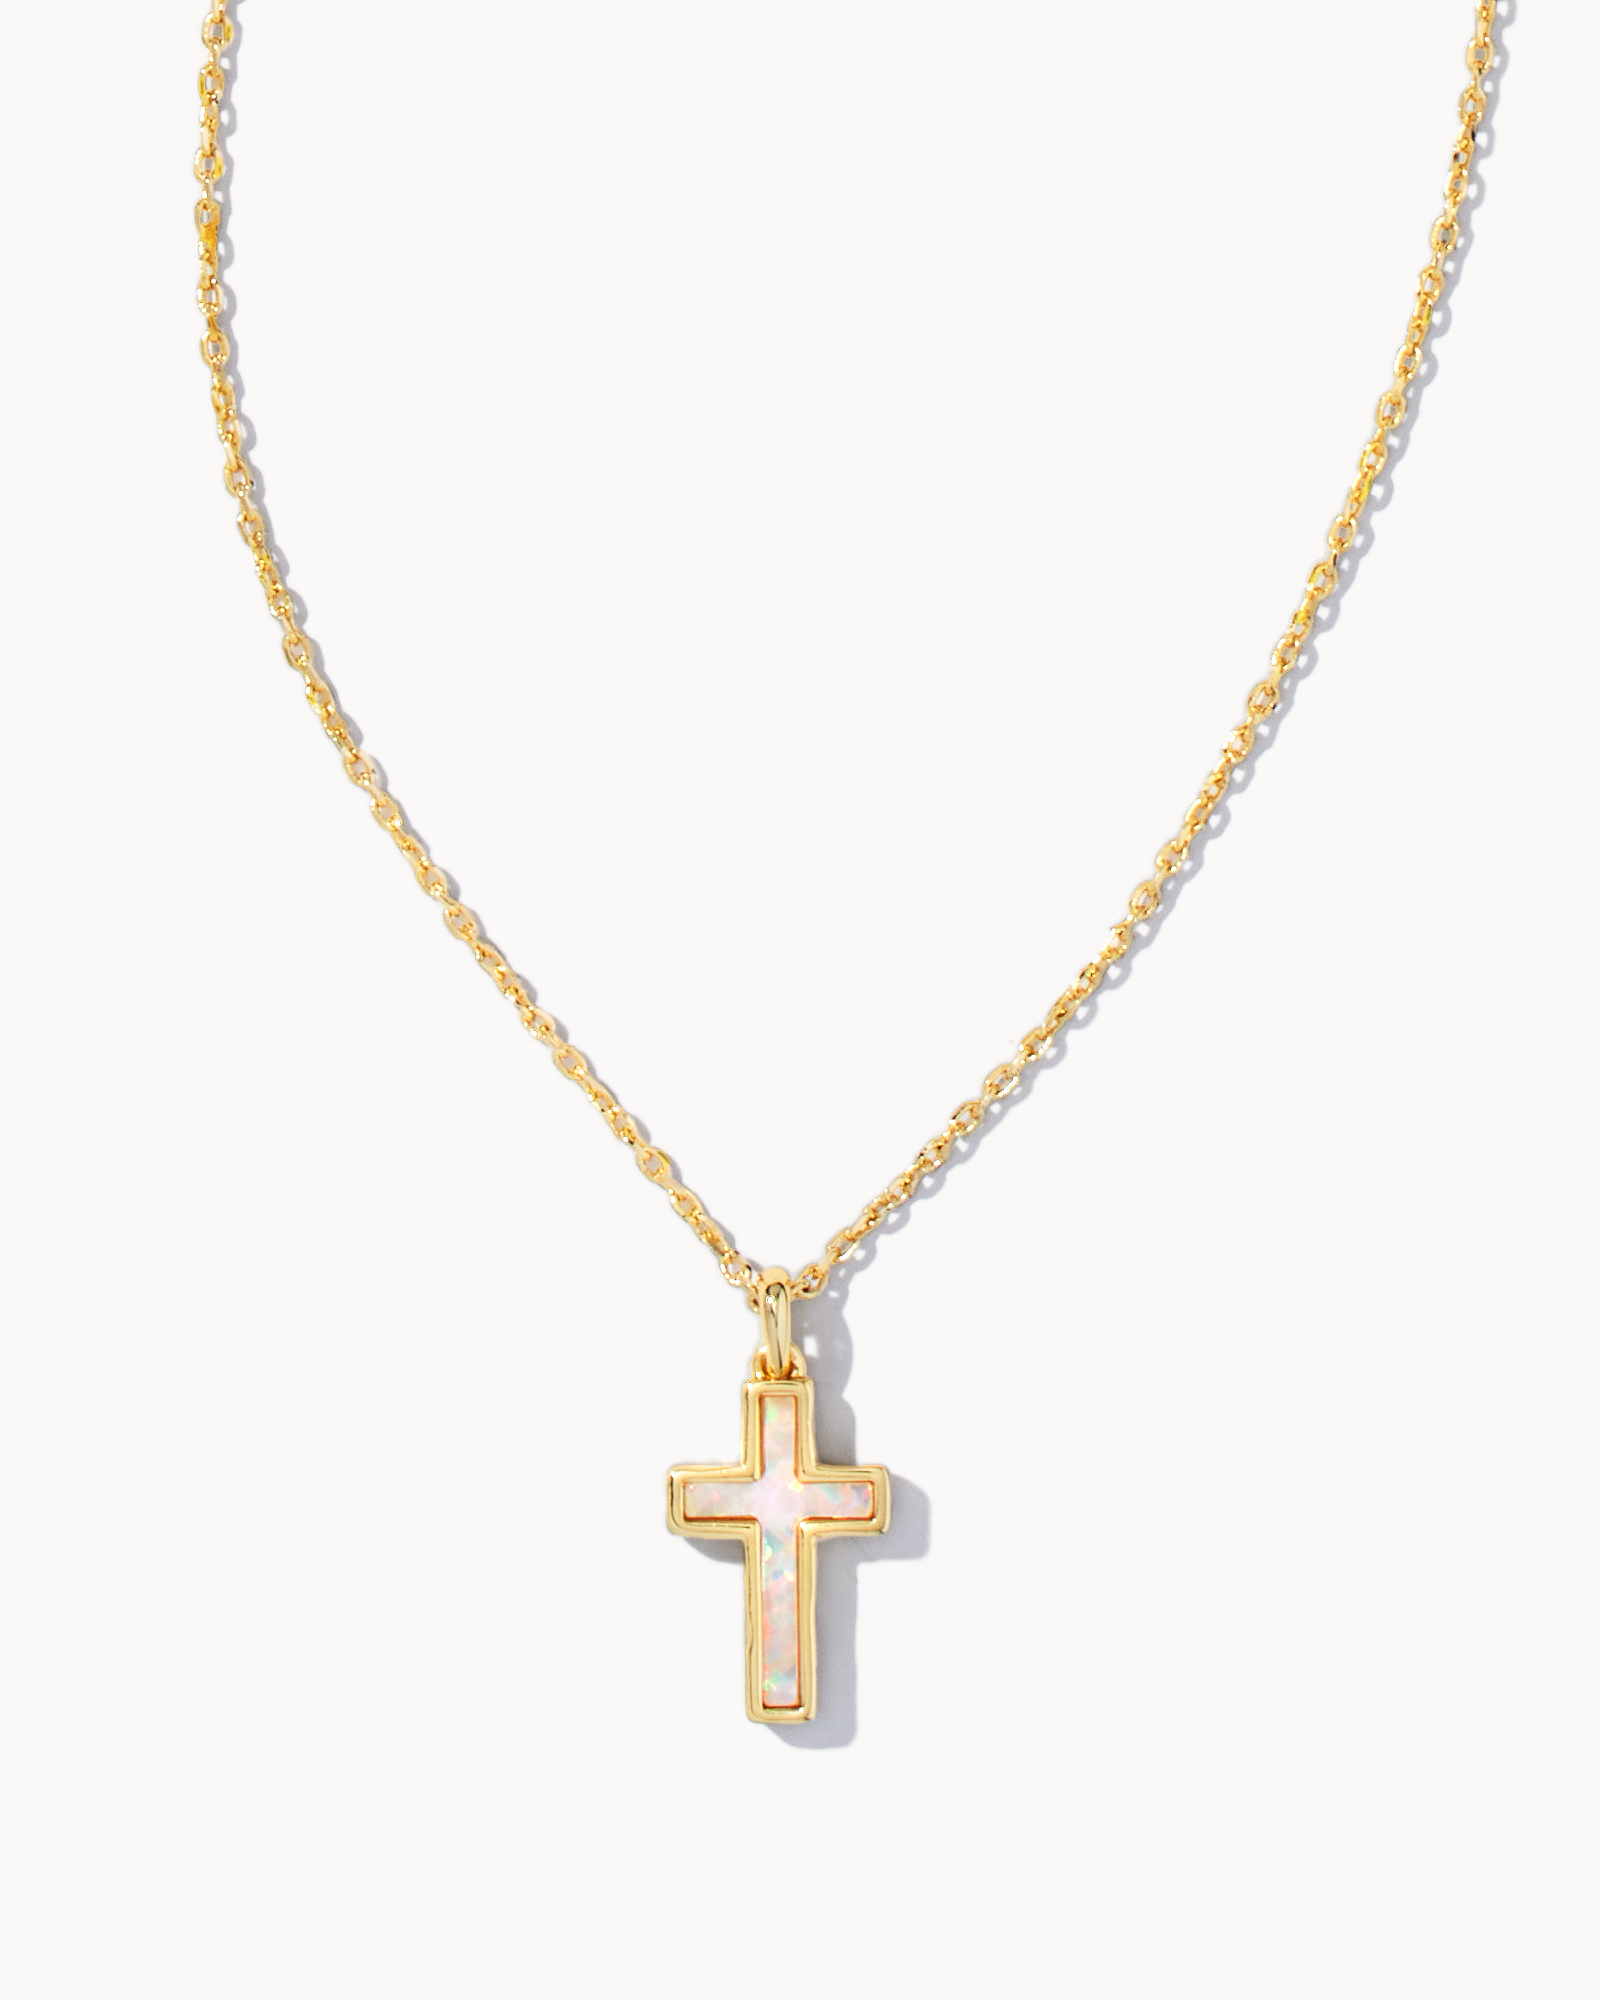 Buy Cross Necklace, Opal Cross Necklace, Blue Cross Necklace, Cross Jewelry,  Cross Pendant, Cross Necklace Women Online in India - Etsy